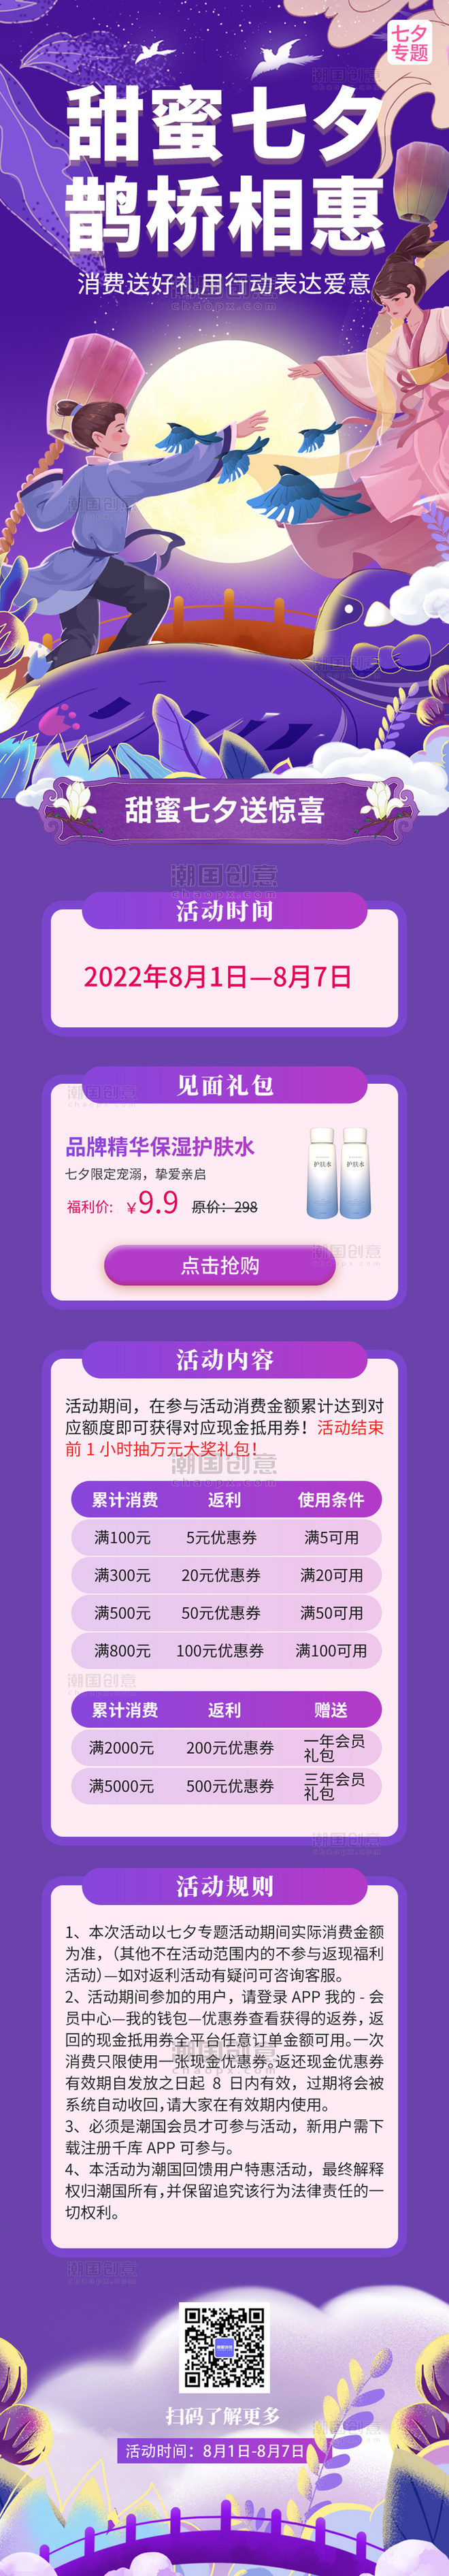 紫色甜蜜七夕专题动活动H5长图营销七夕节促销活动